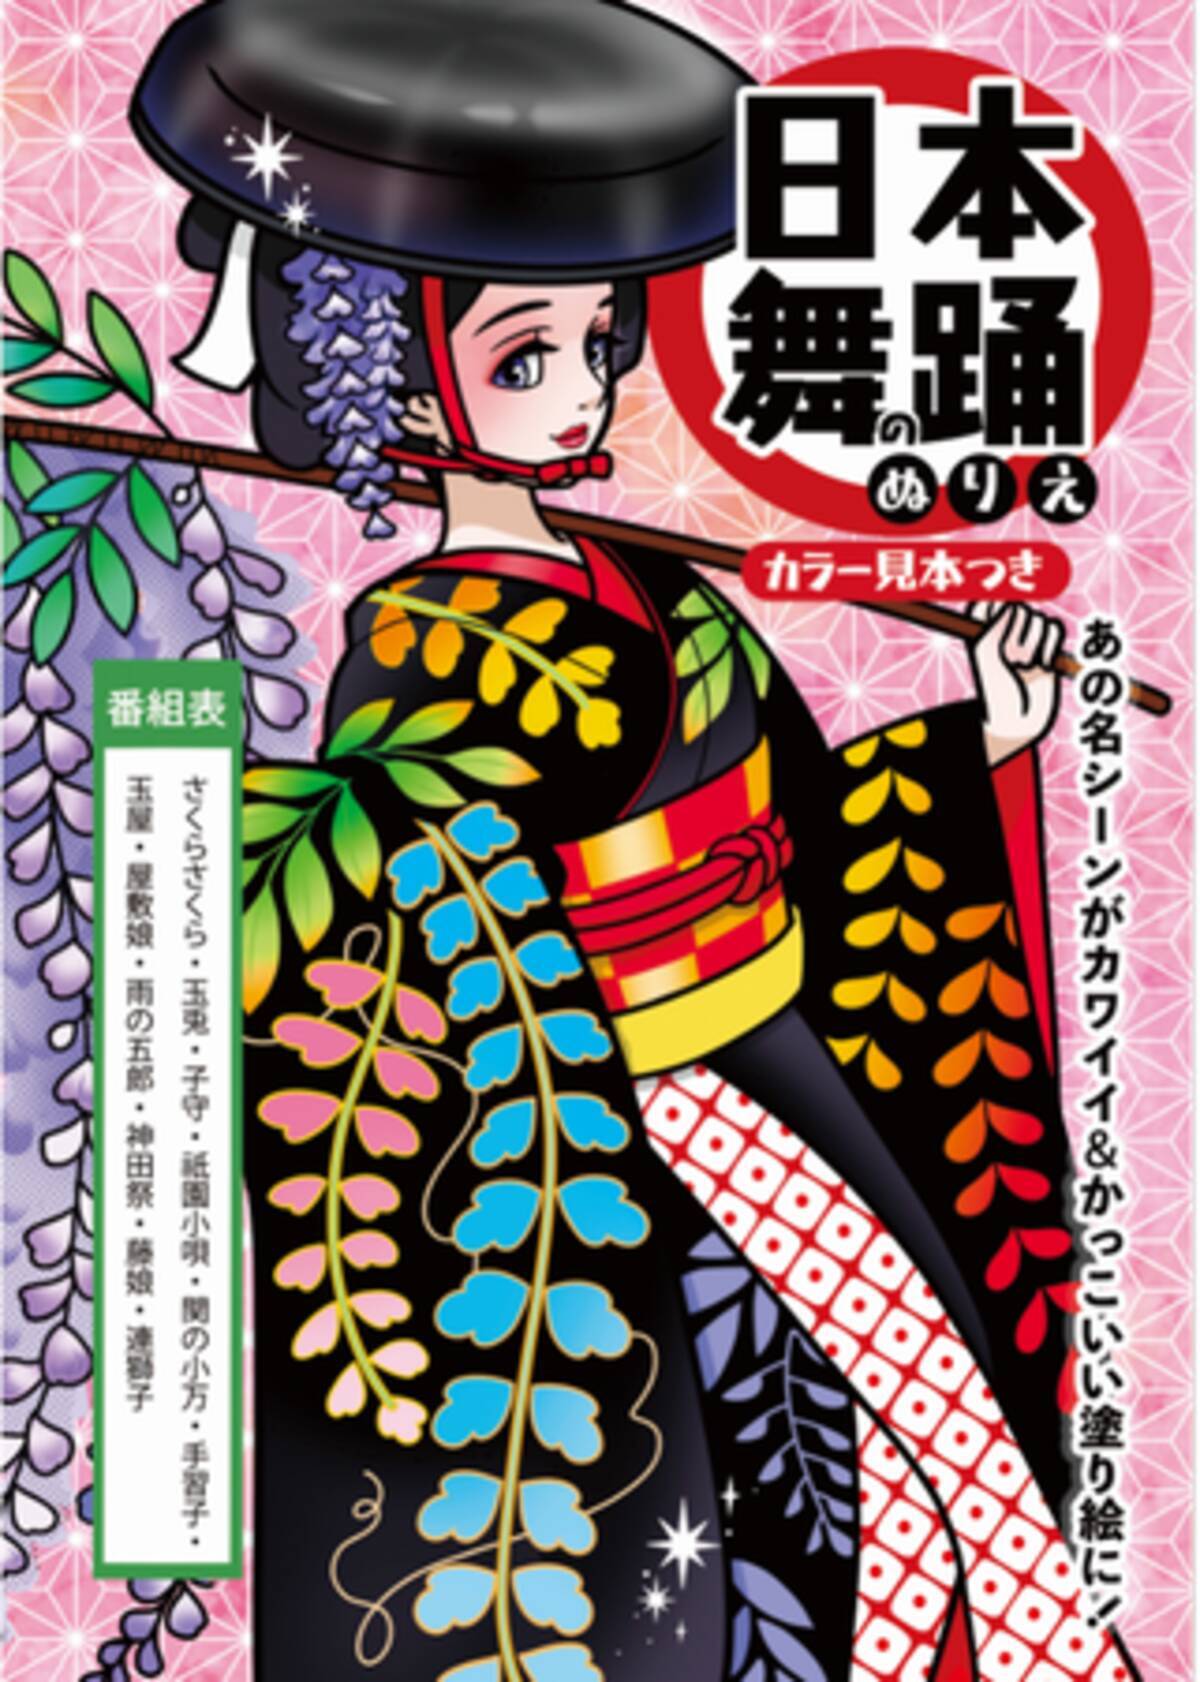 全ページ無料公開中 日本舞踊のぬりえ 年12月15日発売 年12月3日 エキサイトニュース 2 5